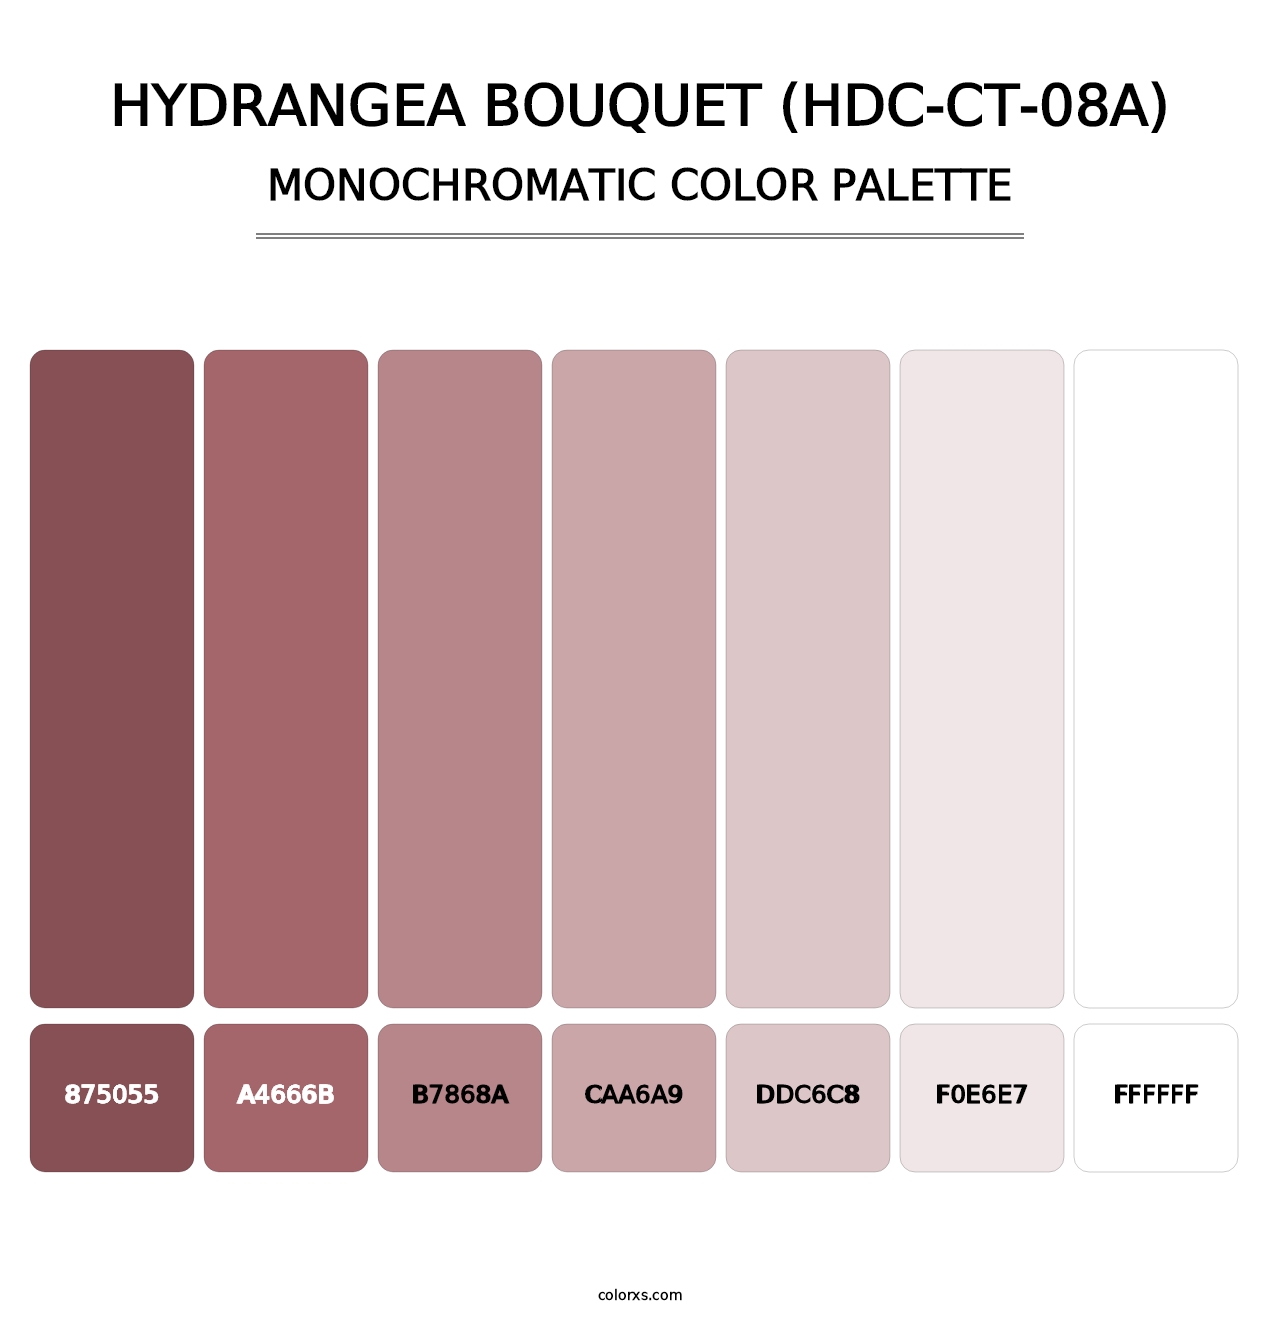 Hydrangea Bouquet (HDC-CT-08A) - Monochromatic Color Palette